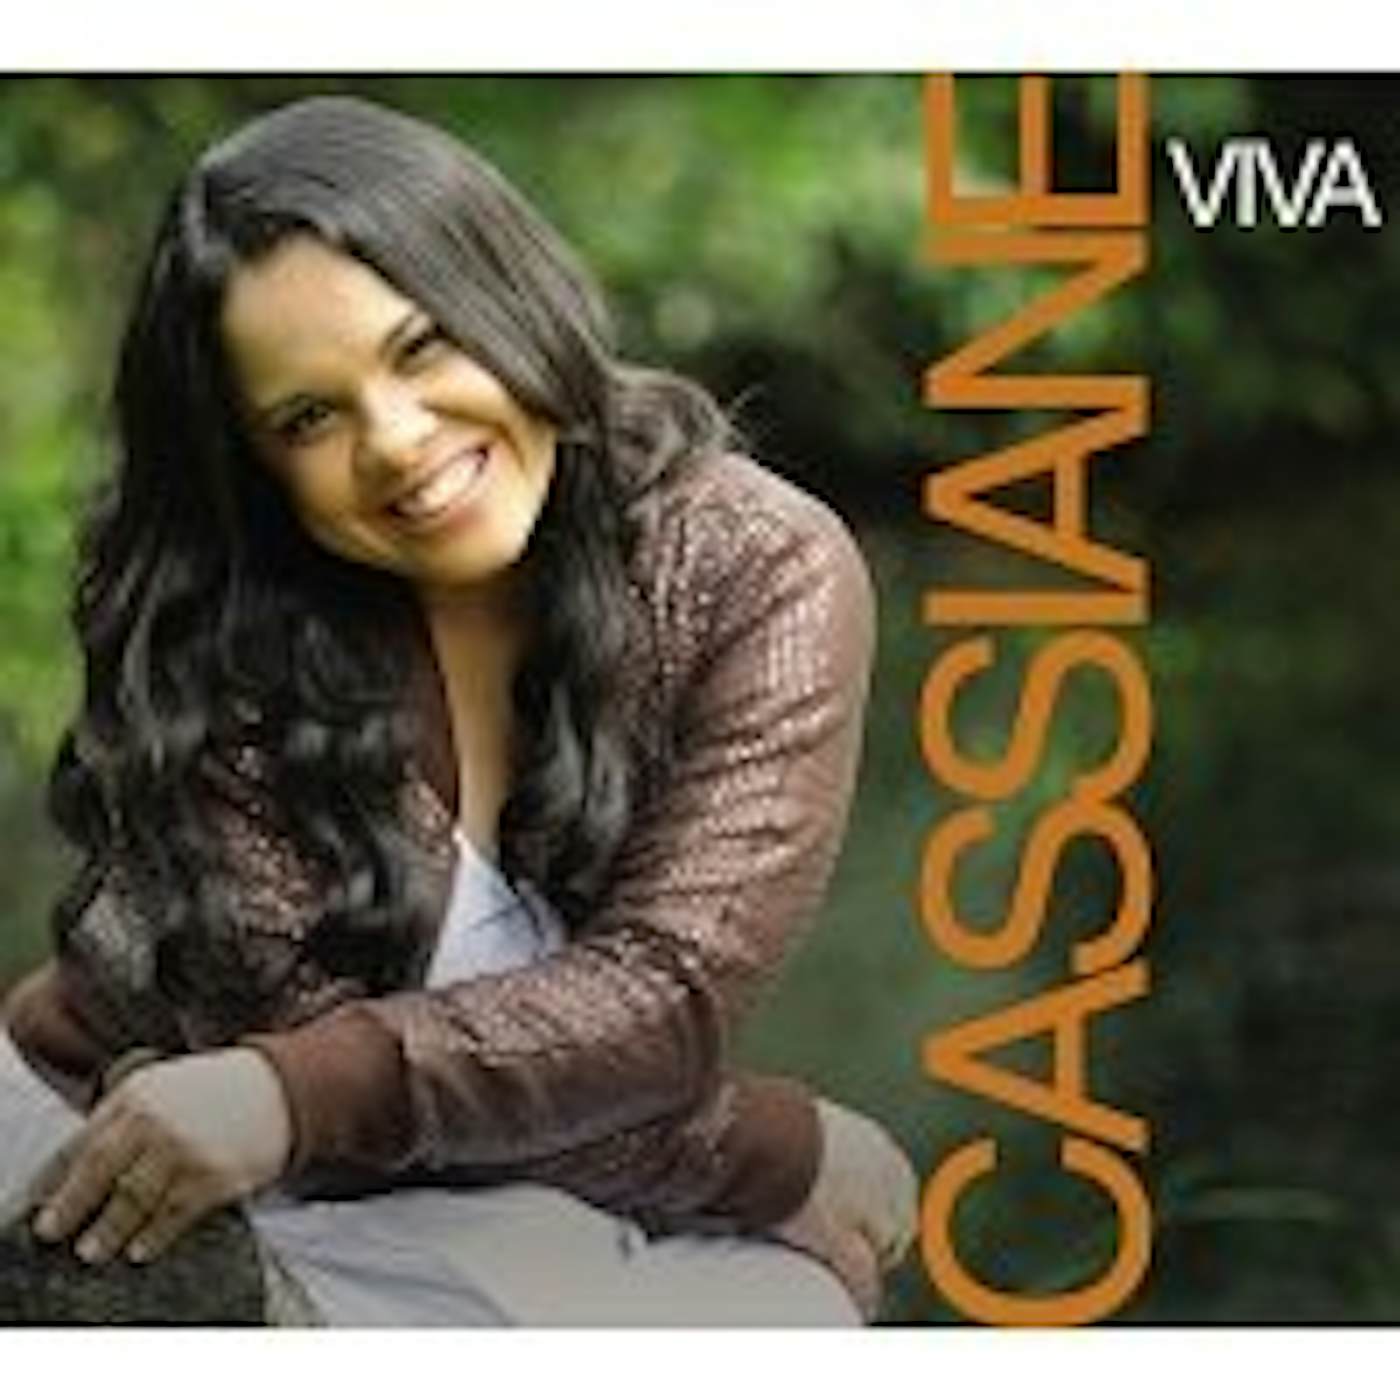 Cassiane VIVA CD